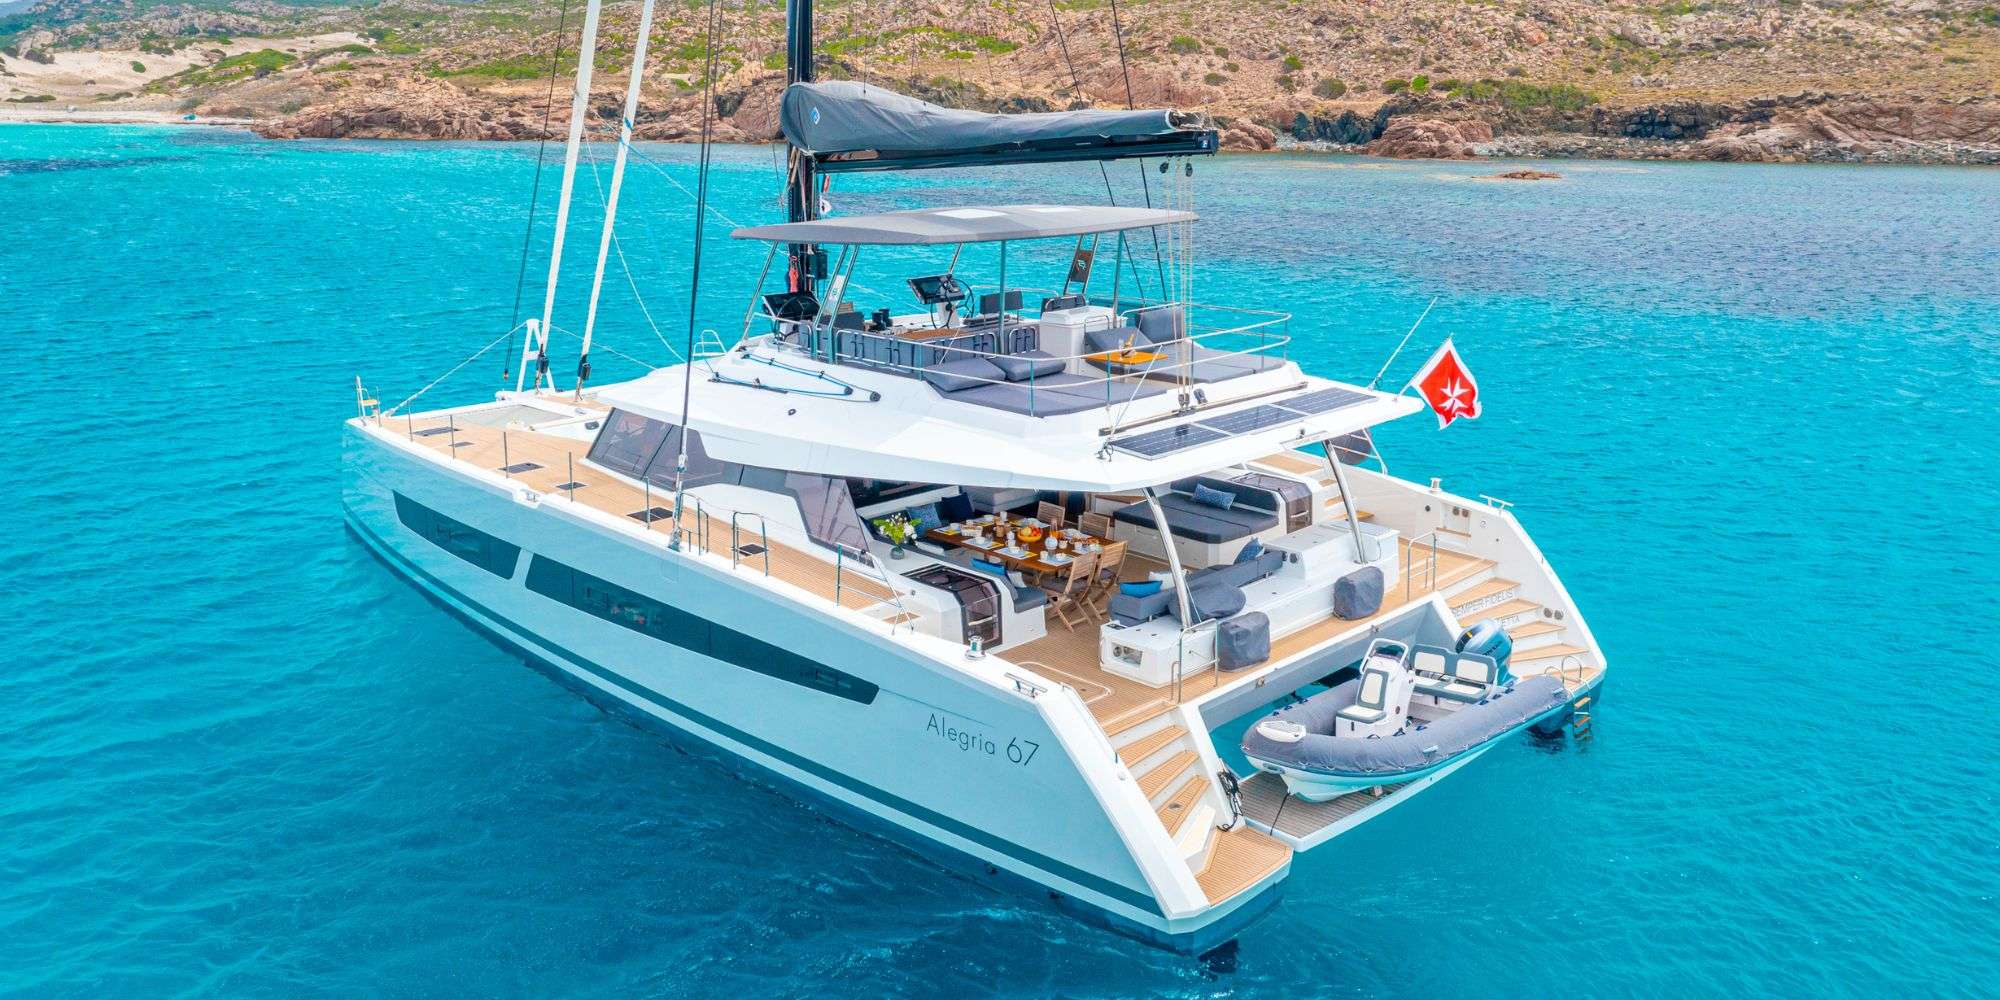 SEMPER FIDELIS - Catamaran Charter Grenada & Boat hire in Bahamas & Caribbean 2